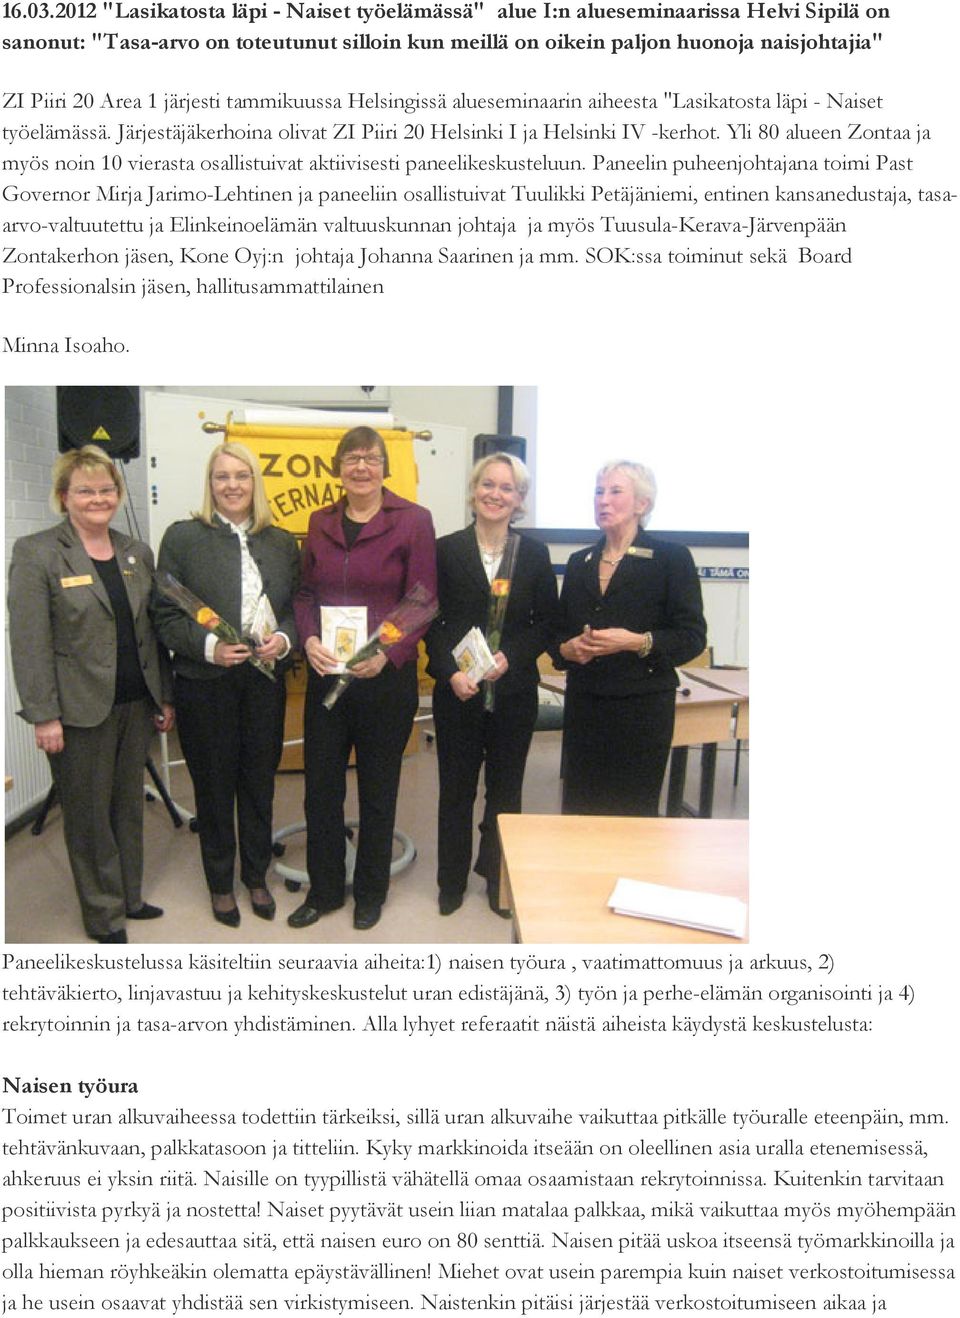 järjesti tammikuussa Helsingissä alueseminaarin aiheesta "Lasikatosta läpi - Naiset työelämässä. Järjestäjäkerhoina olivat ZI Piiri 20 Helsinki I ja Helsinki IV -kerhot.